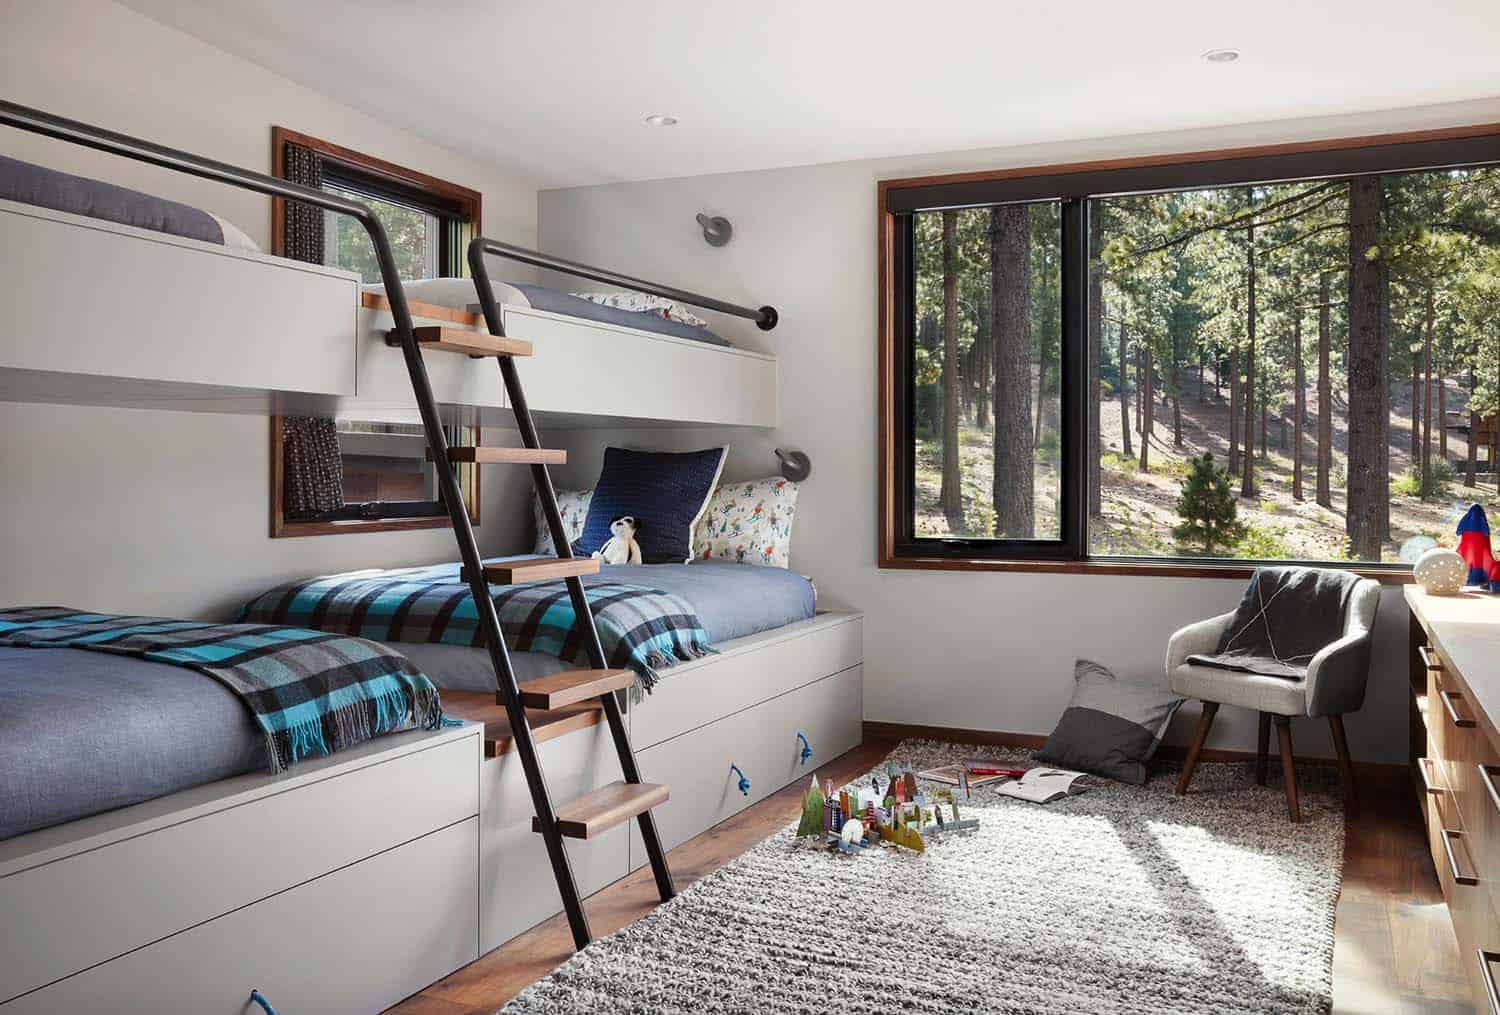 contemporary-kids-bunk-bedroom